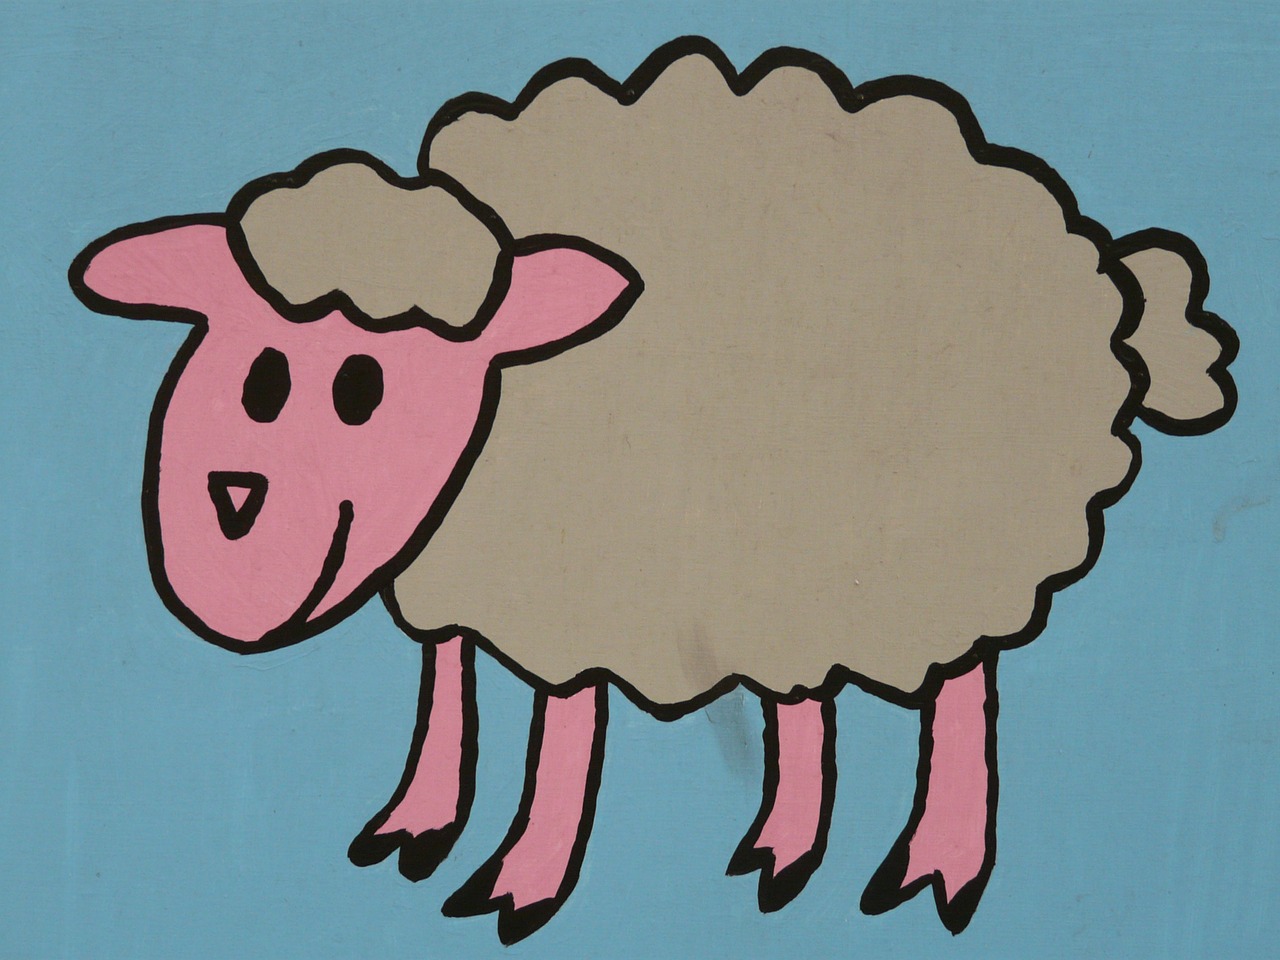 sheep cartoon character drawing free photo